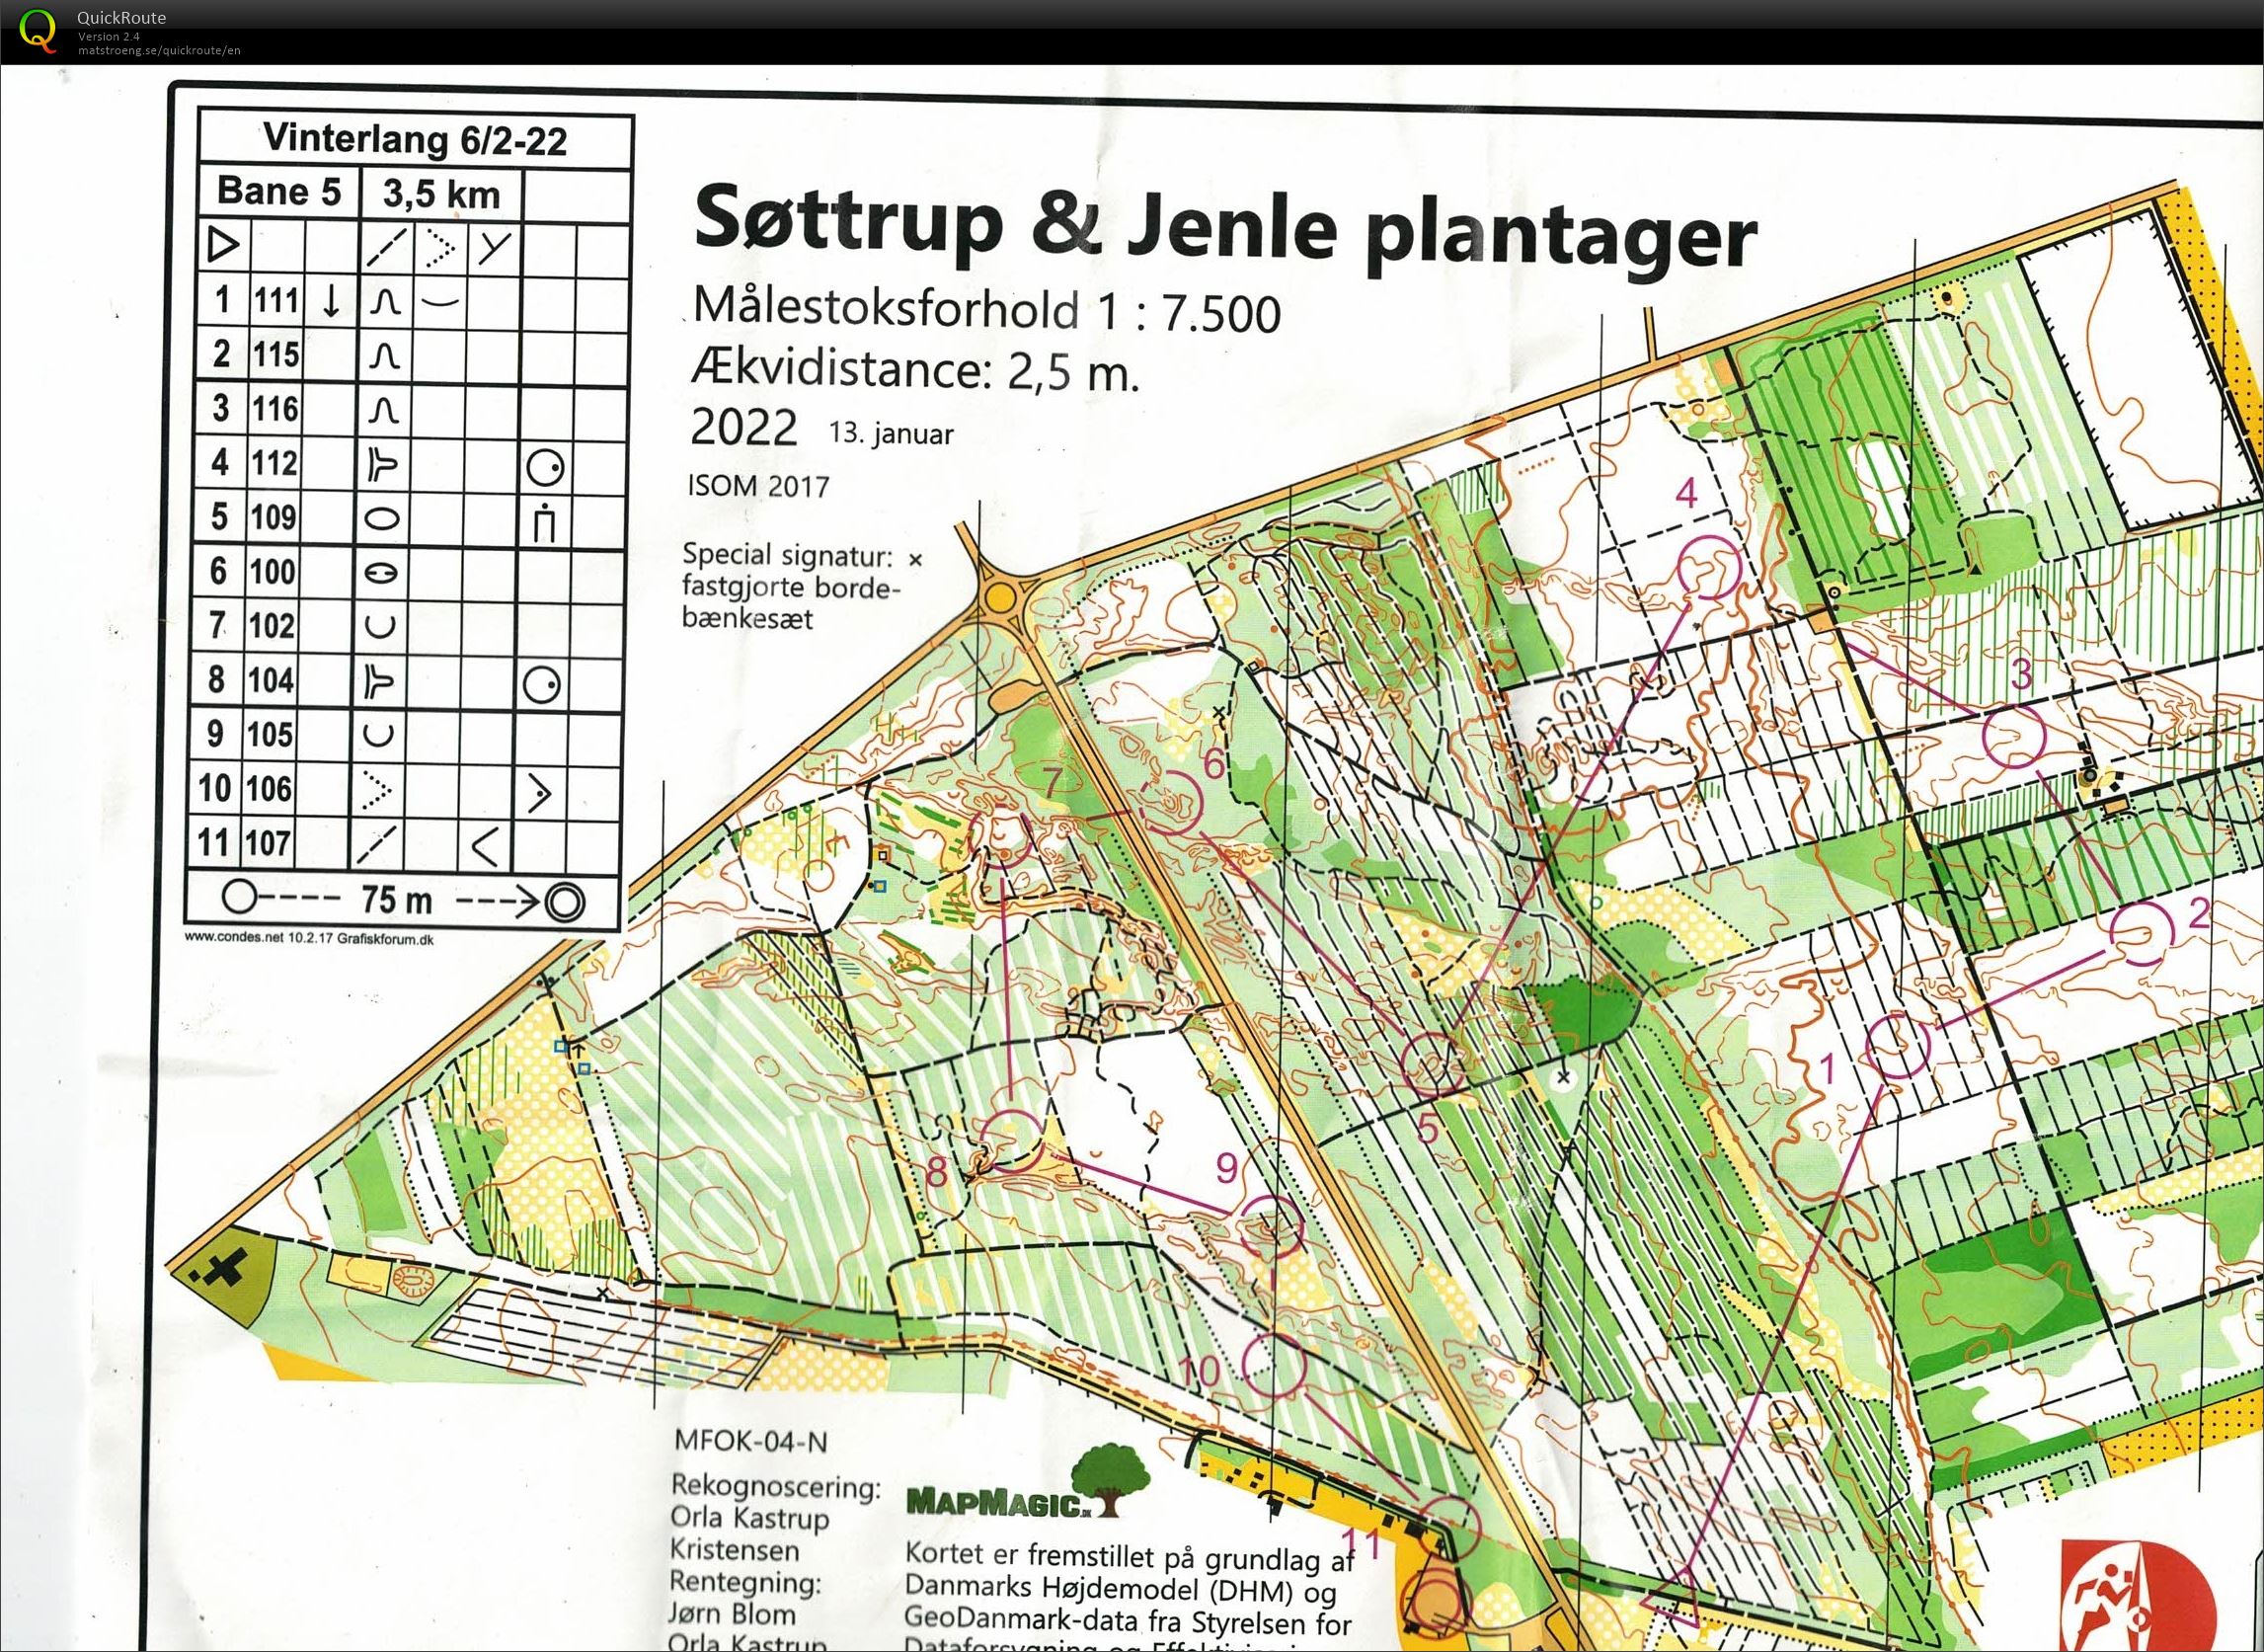 Søttrup Jenle Plantager, Vinterlang, Bane 5, Pia Gade, 060222 (2022-02-06)